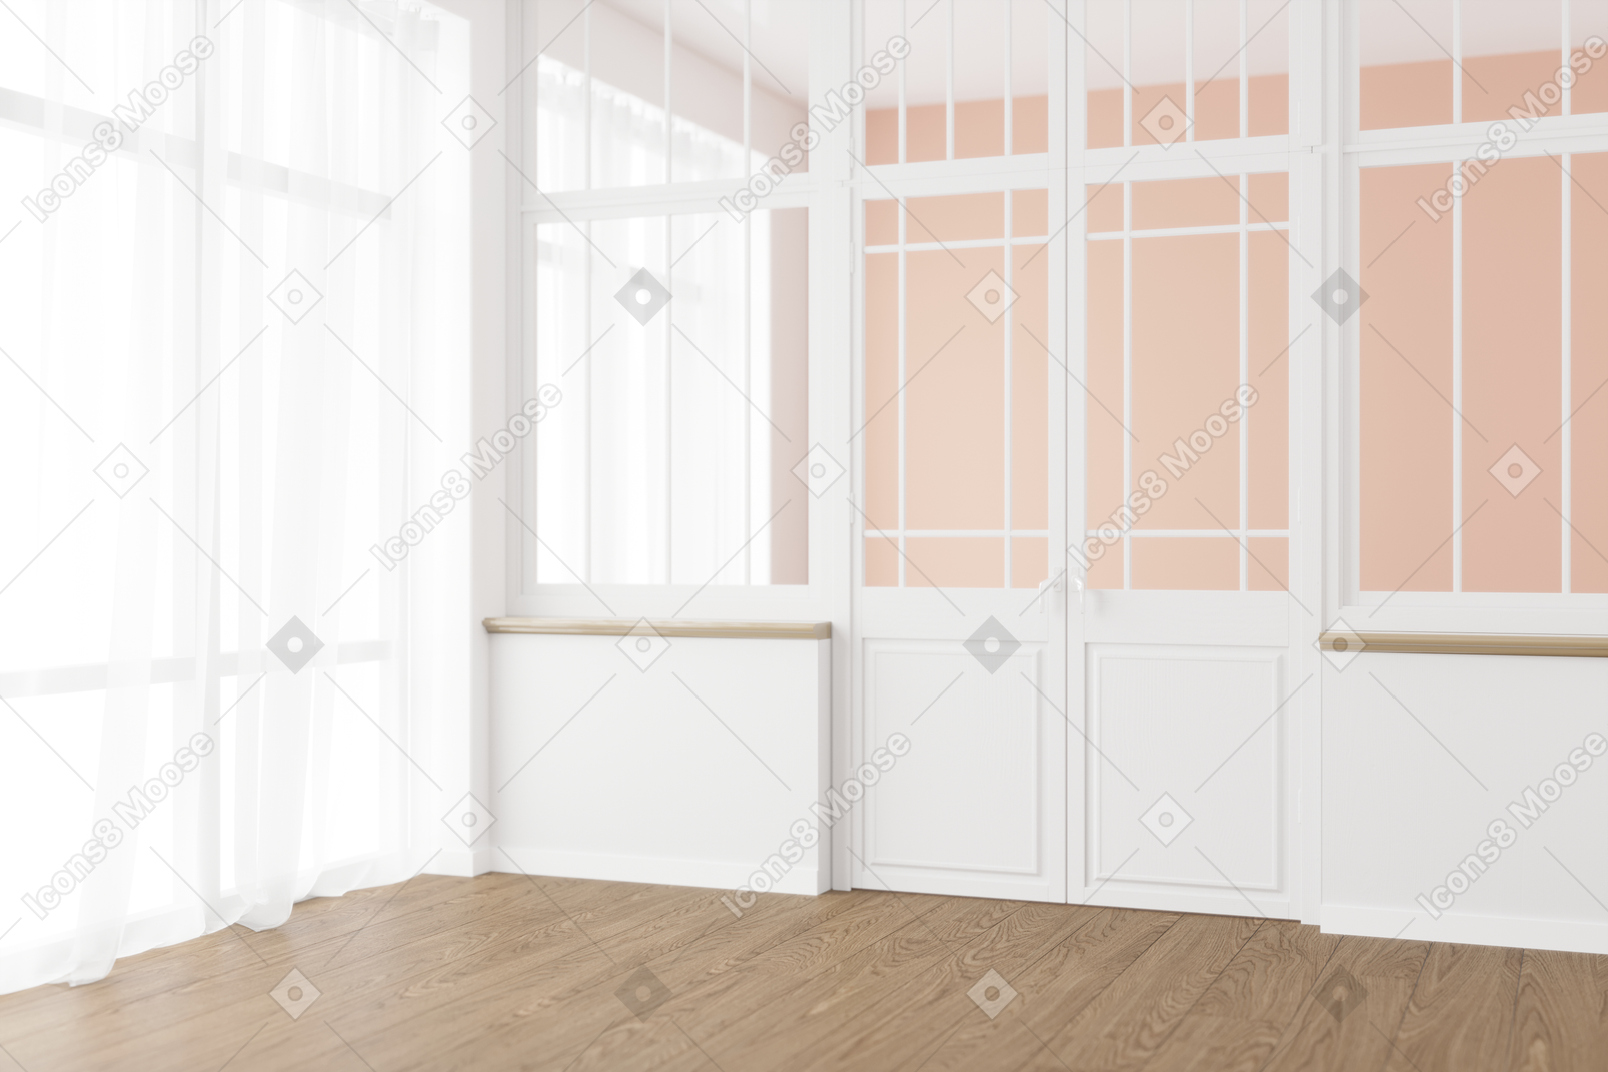 Sala com portas francesas, grandes janelas e cortinas transparentes